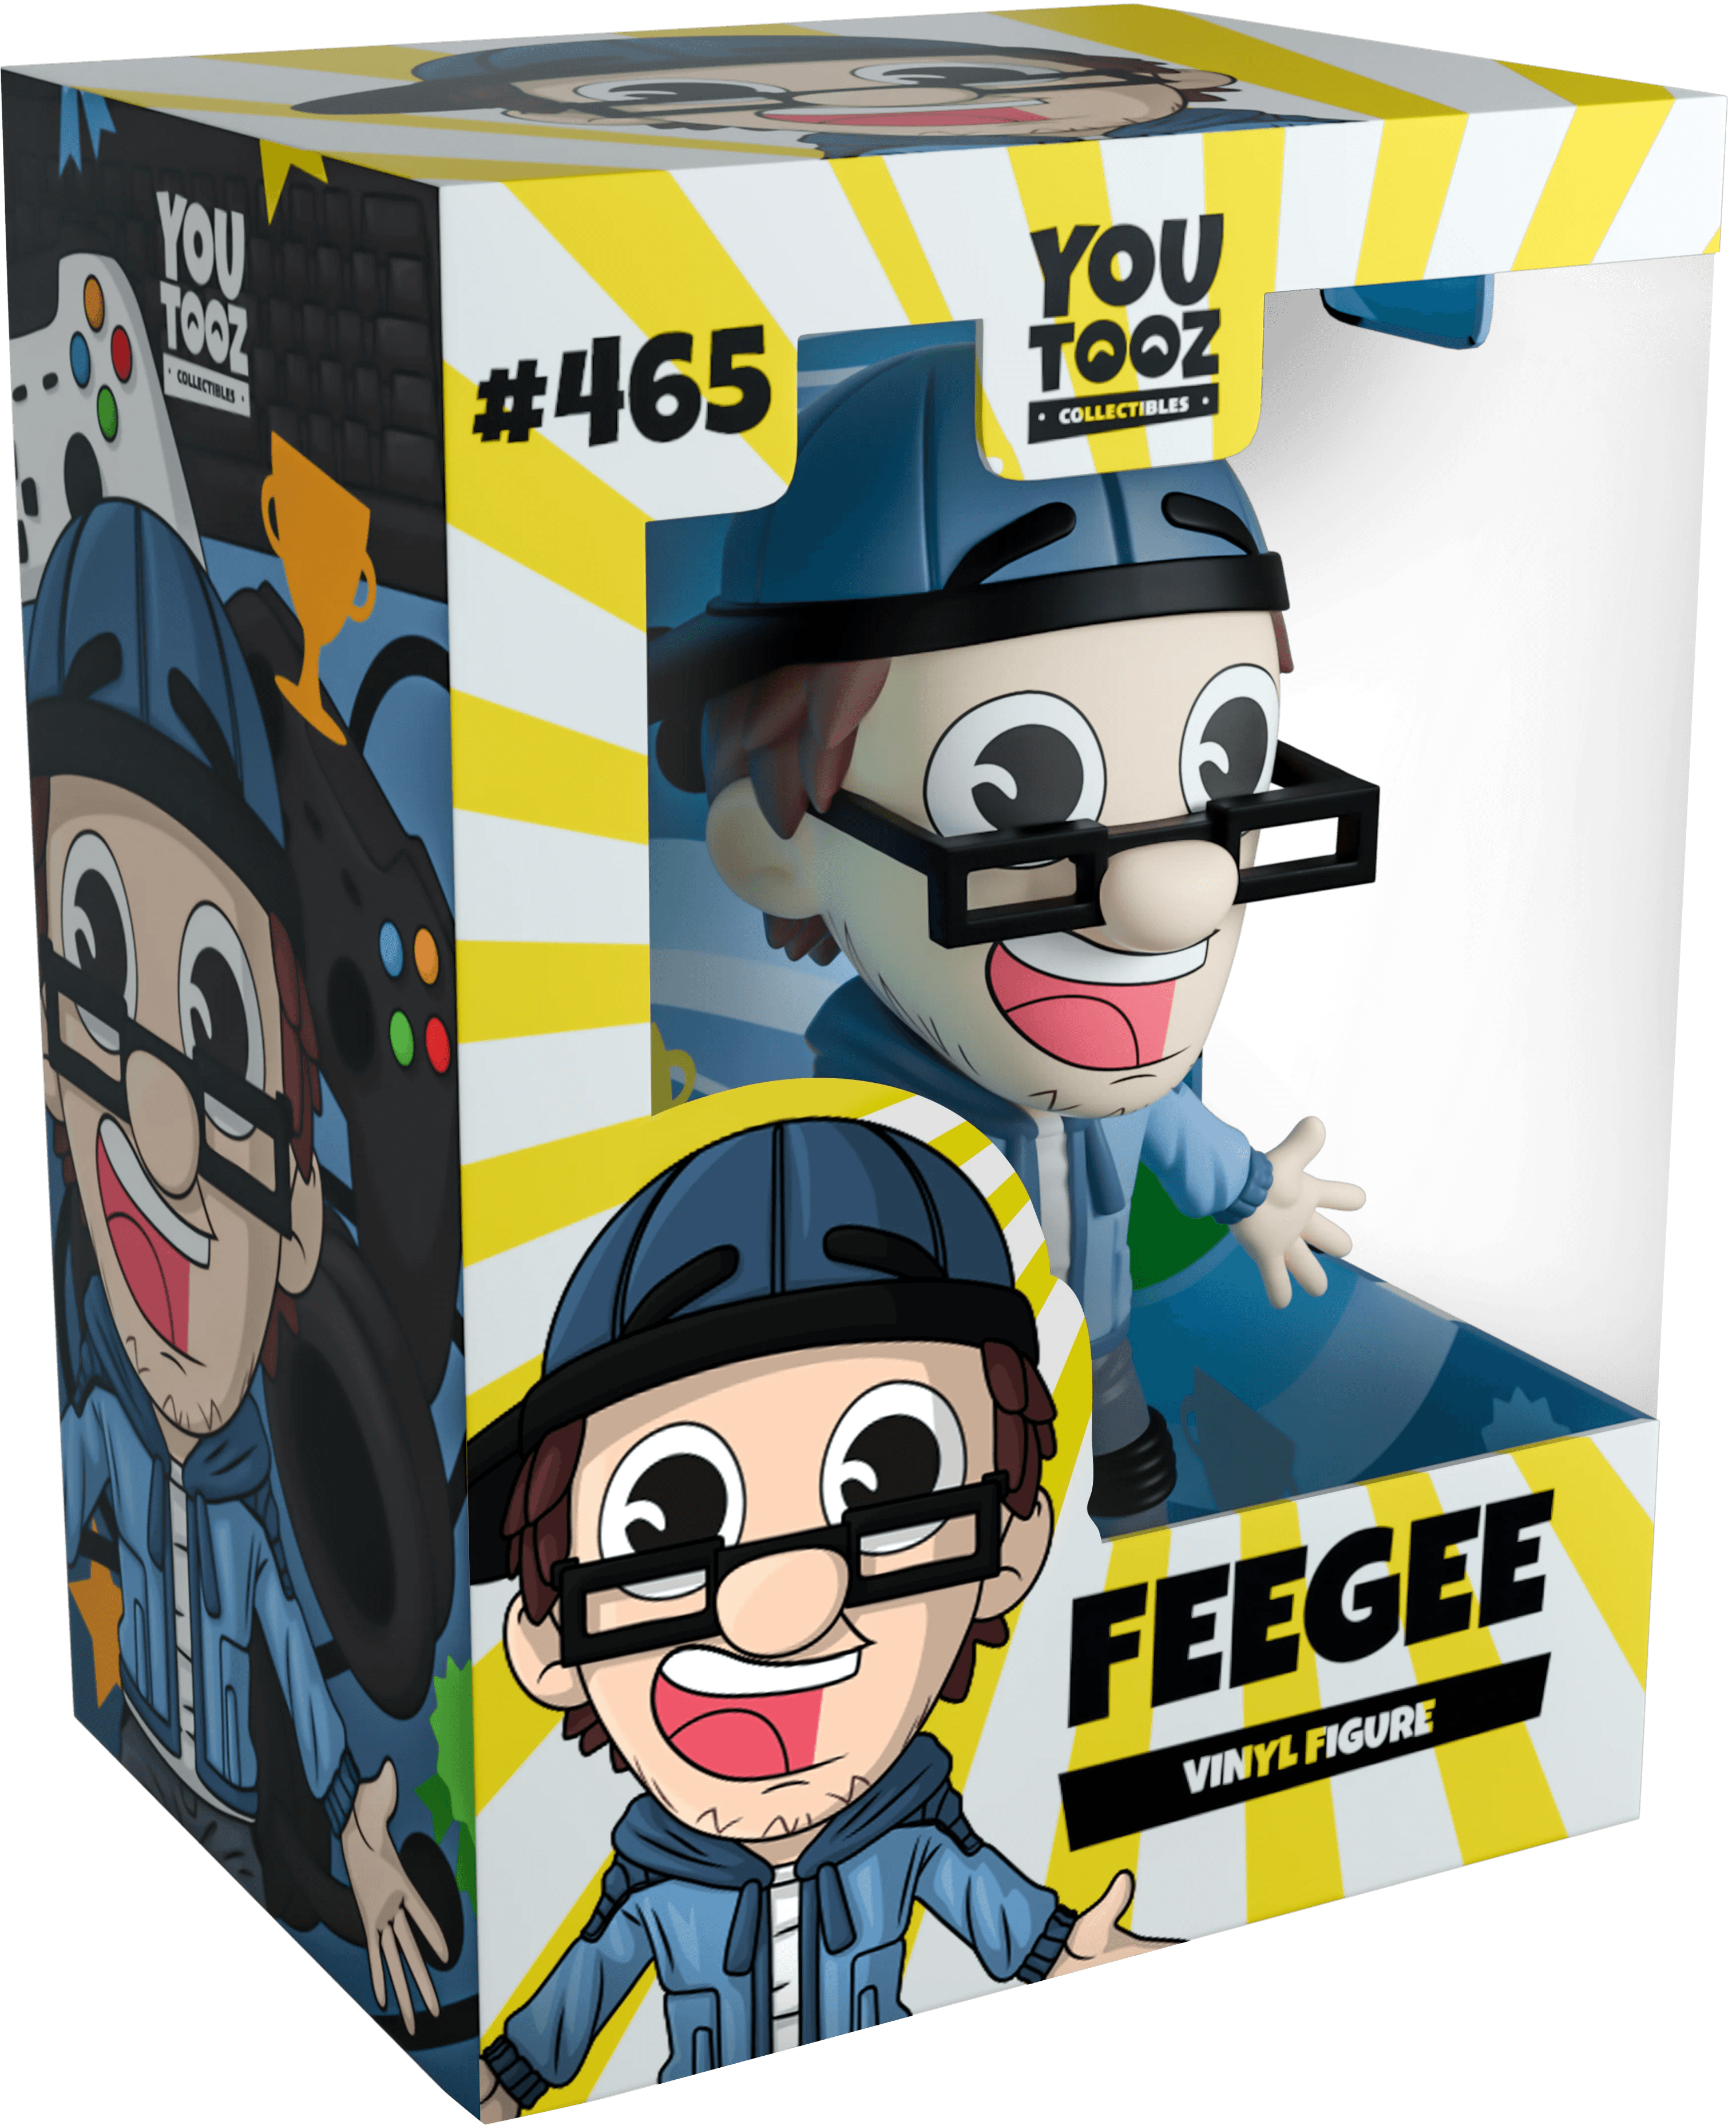 Youtooz - FGTeeV - Feegee Vinyl Figure #465 - The Card Vault